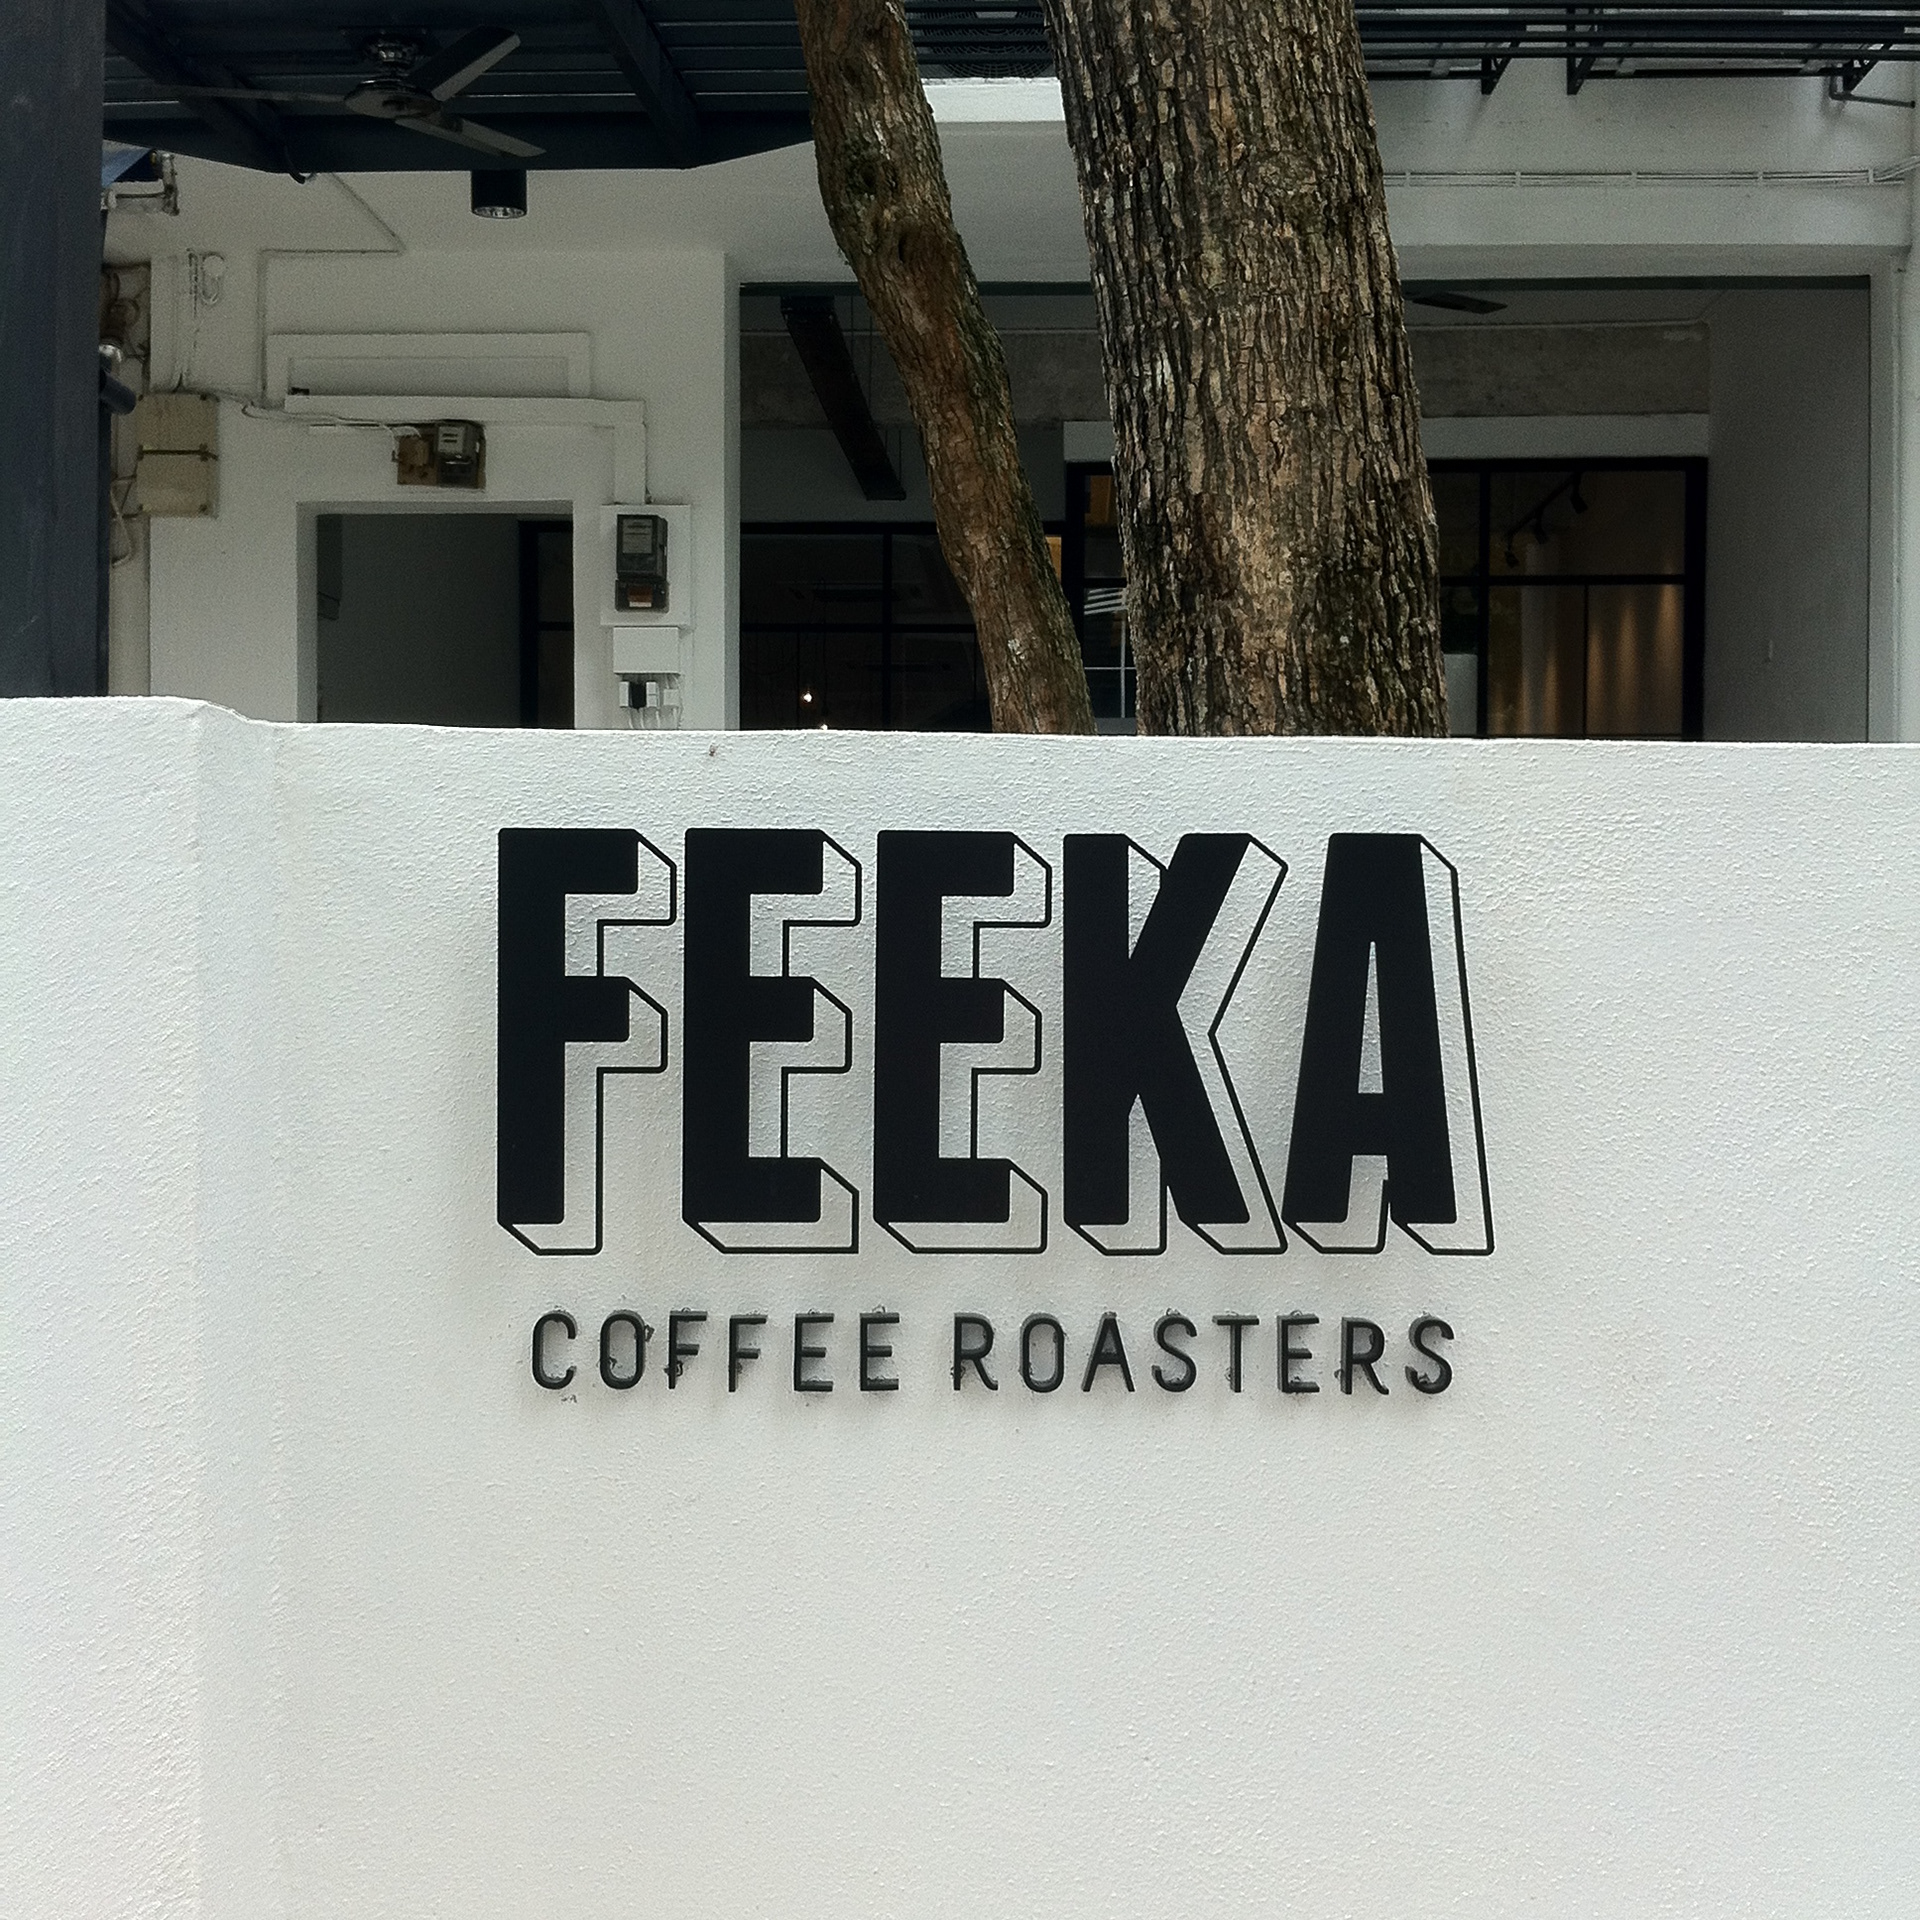 Feeka coffee roasters